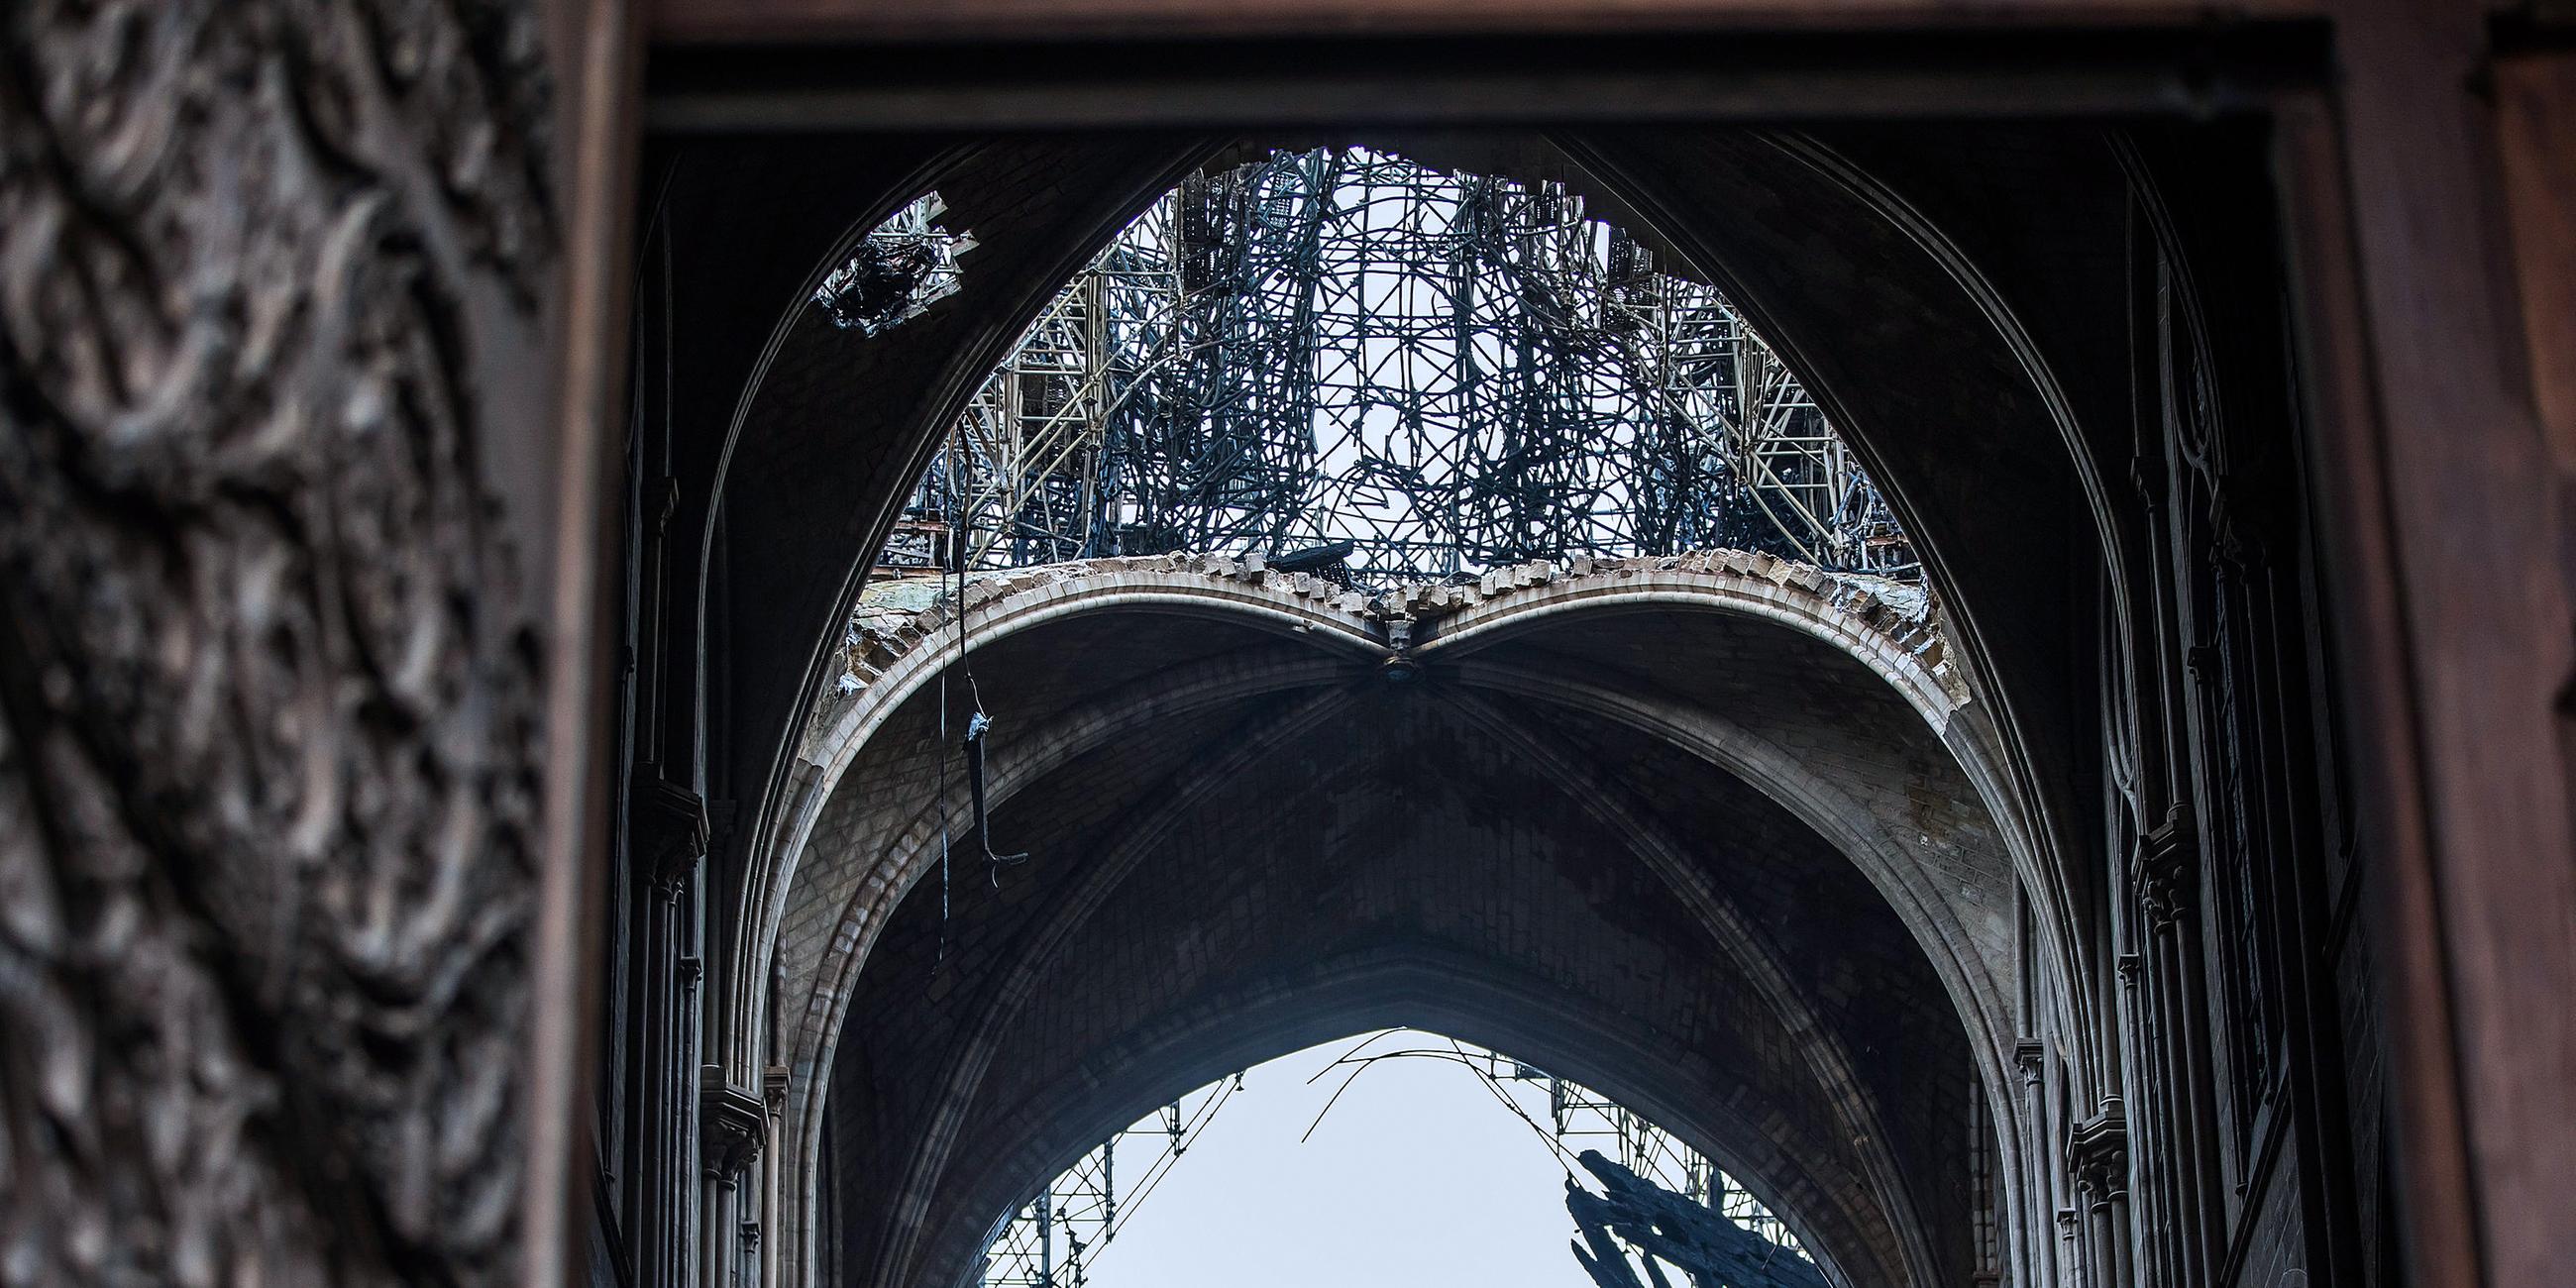 Nach dem Brand erkennt man die Zerstörungen der Dachstruktur in Notre-Dame, Paris, aufgenommen am 16.04.2019